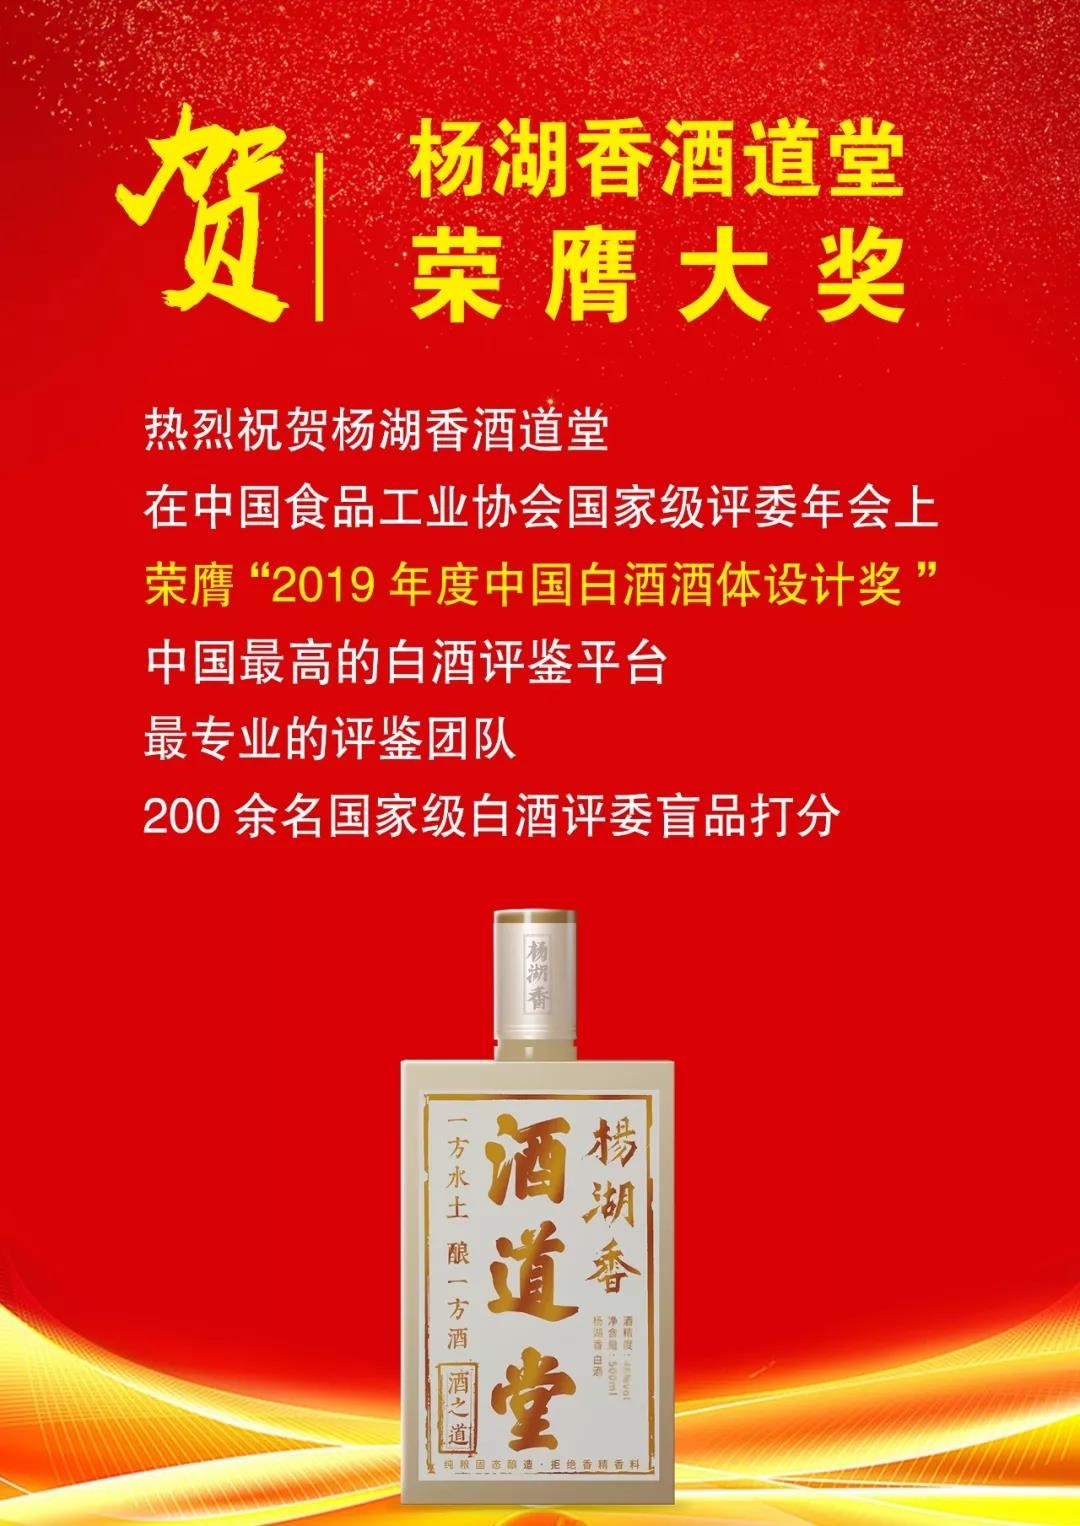 杨湖香酒道堂荣获2019年度白酒评委年会最高奖项